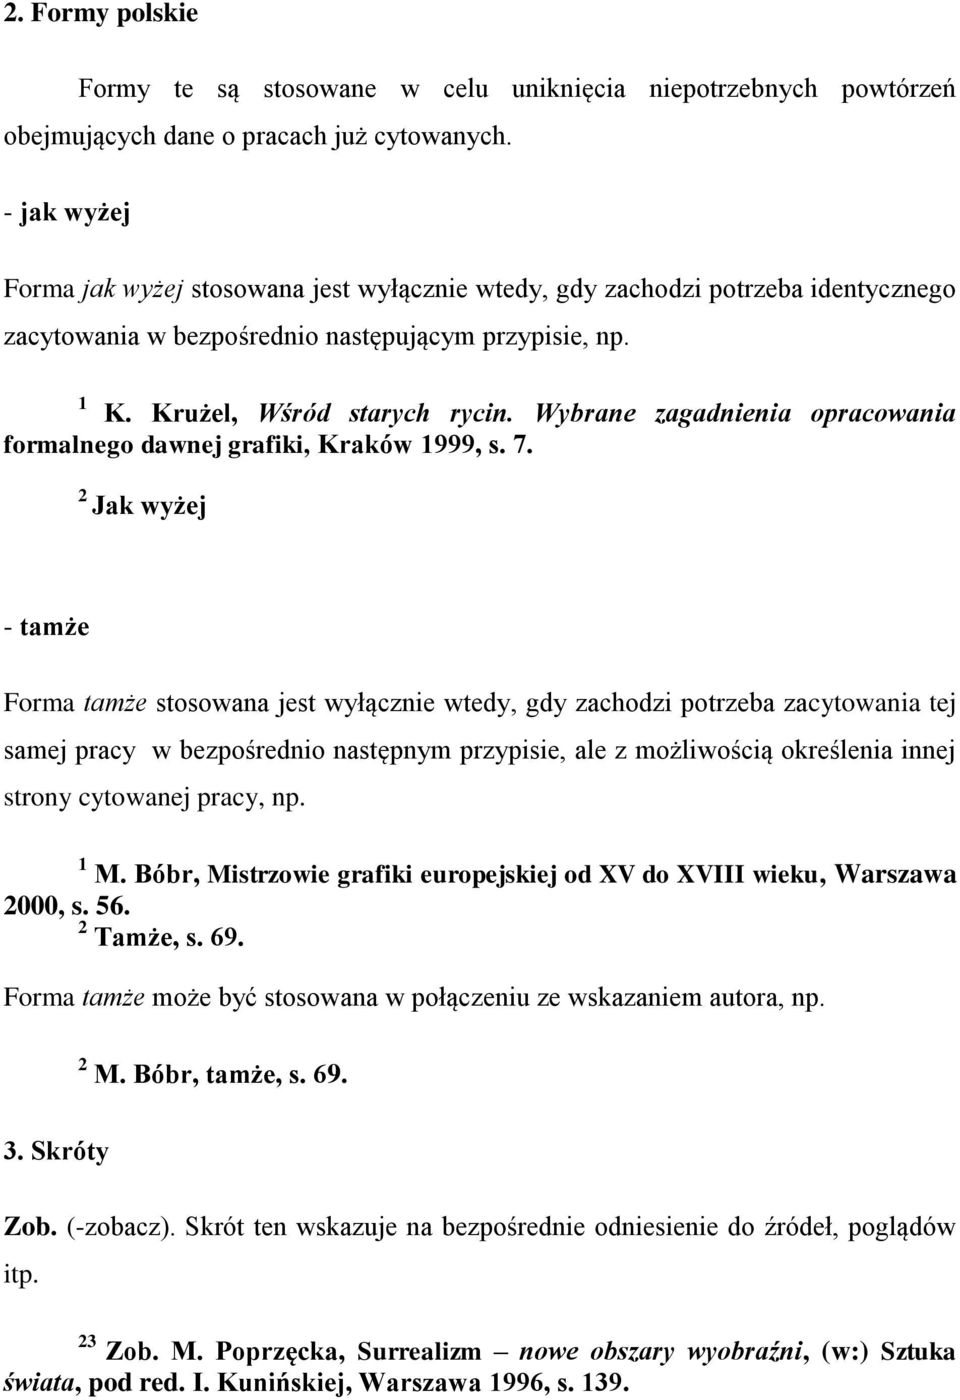 Wybrane zagadnienia opracowania formalnego dawnej grafiki, Kraków 1999, s. 7.